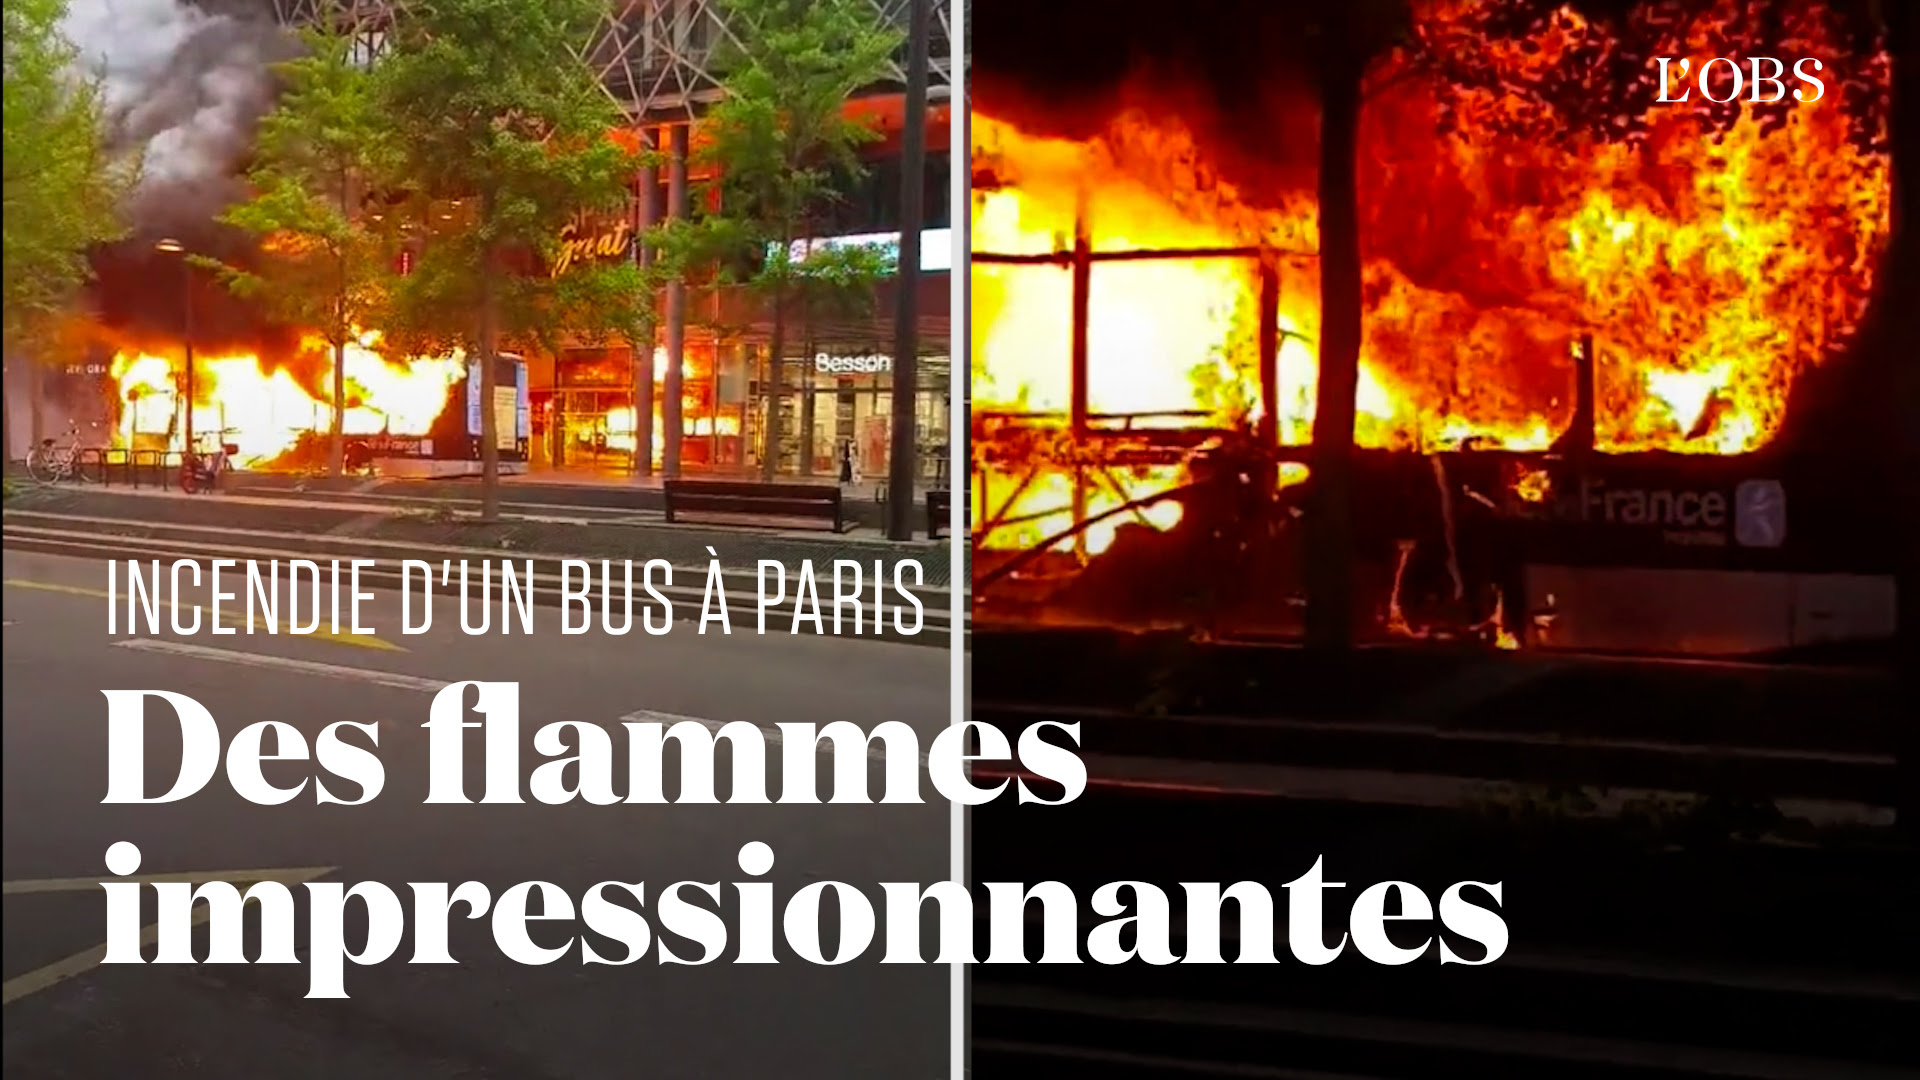 Un bus électrique prend feu à Paris, la RATP suspend 149 véhicules